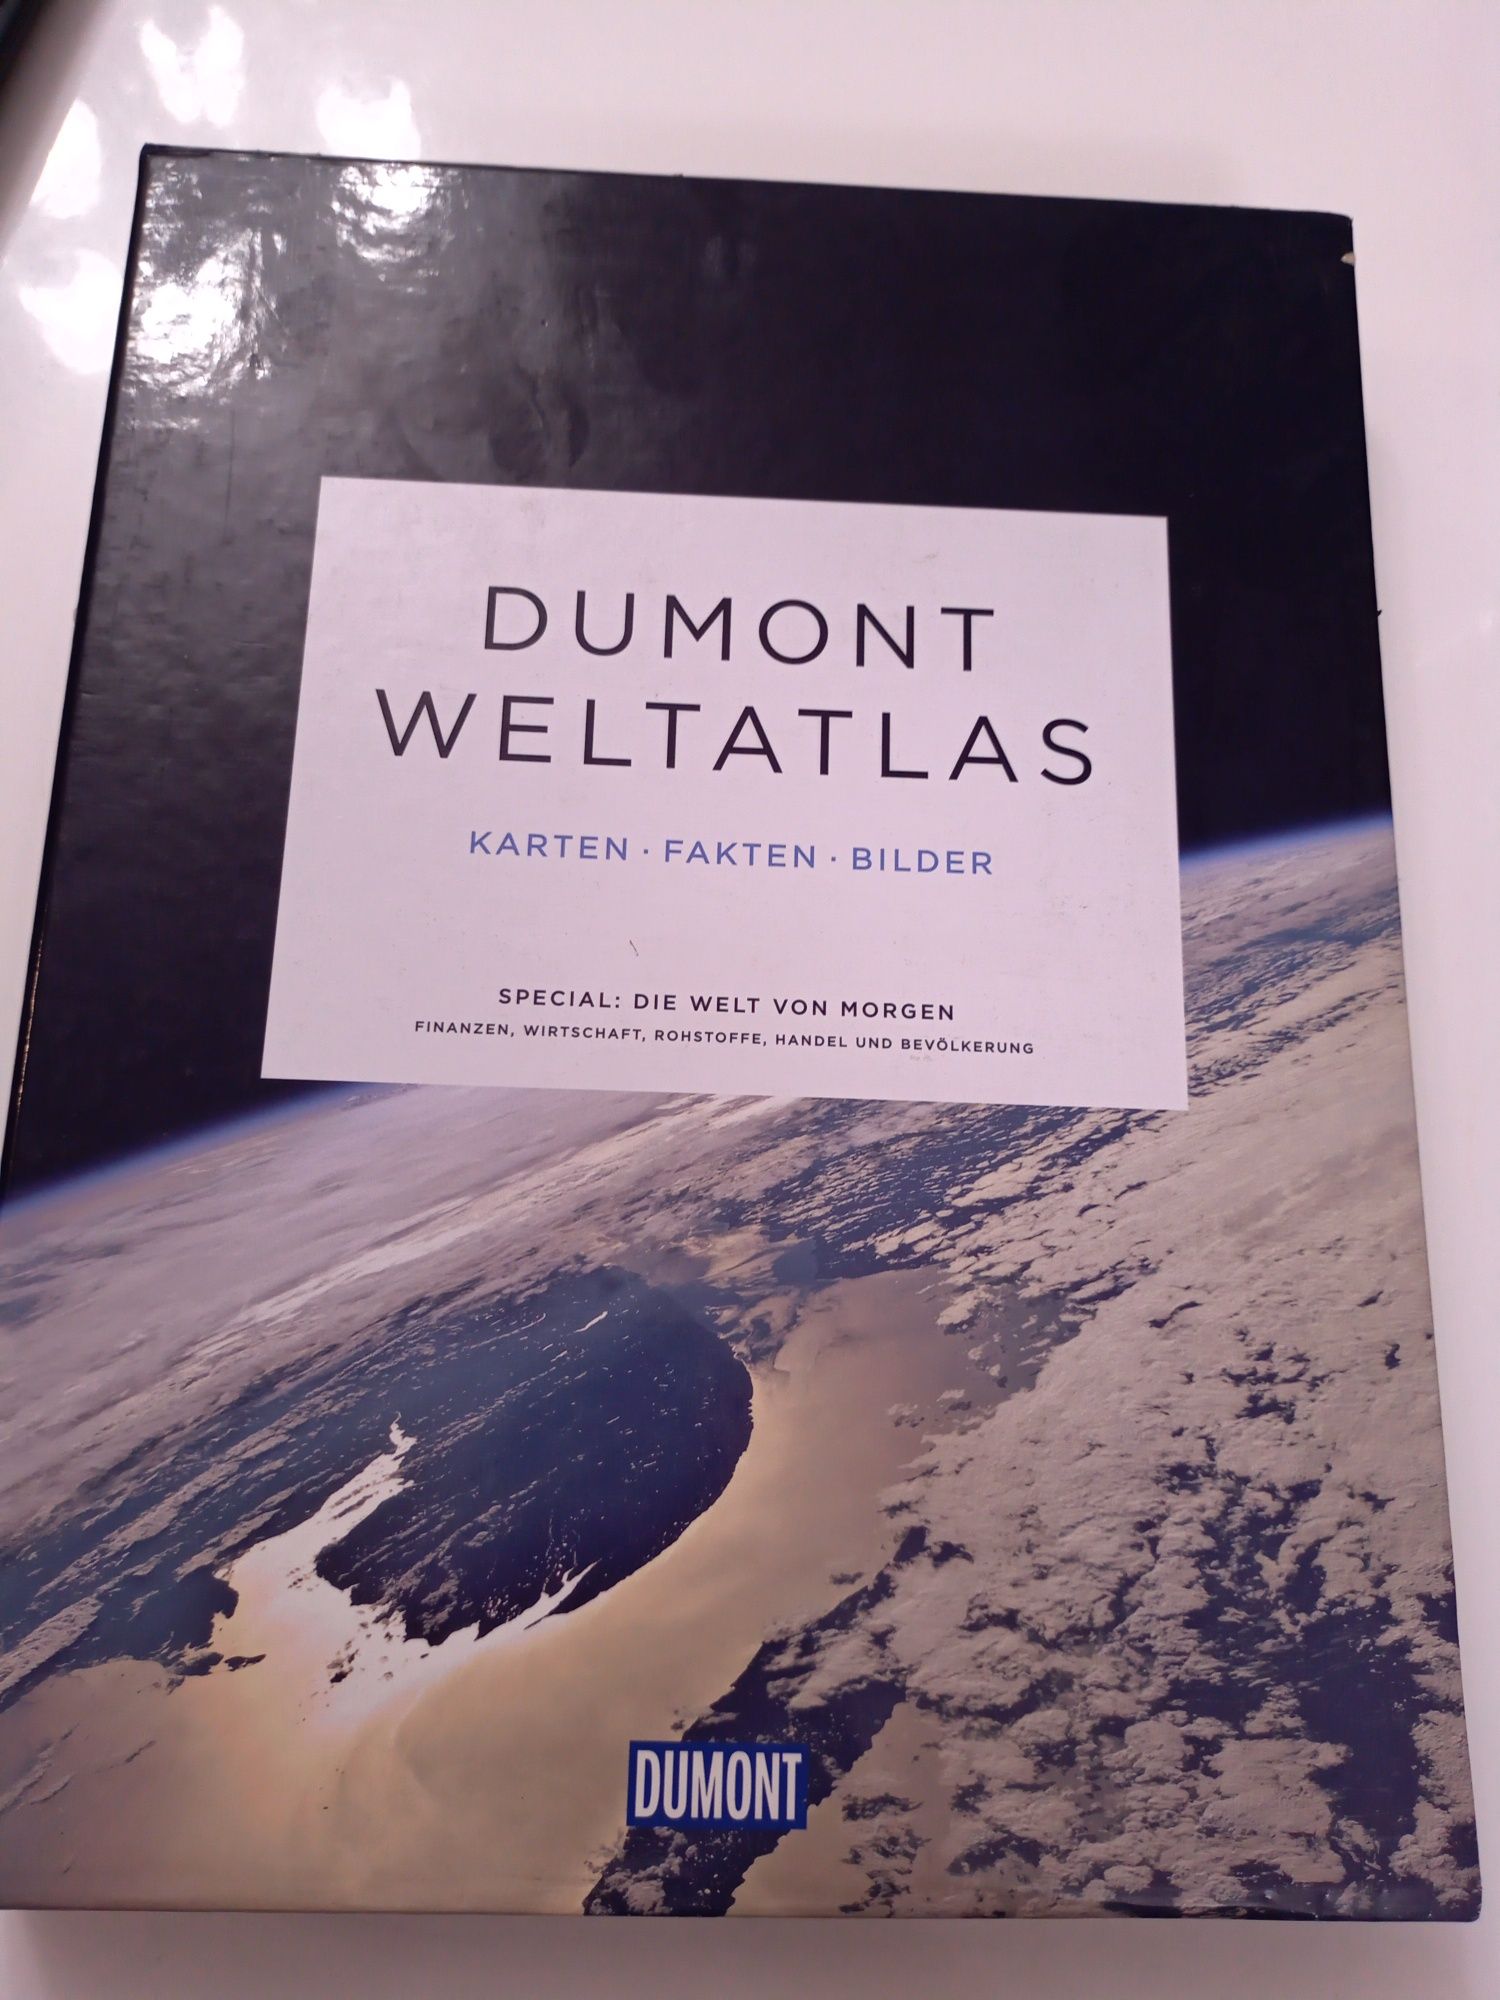 DuMont Weltatlas: Karten - Fakten - Bilder niemiecki atlas świata